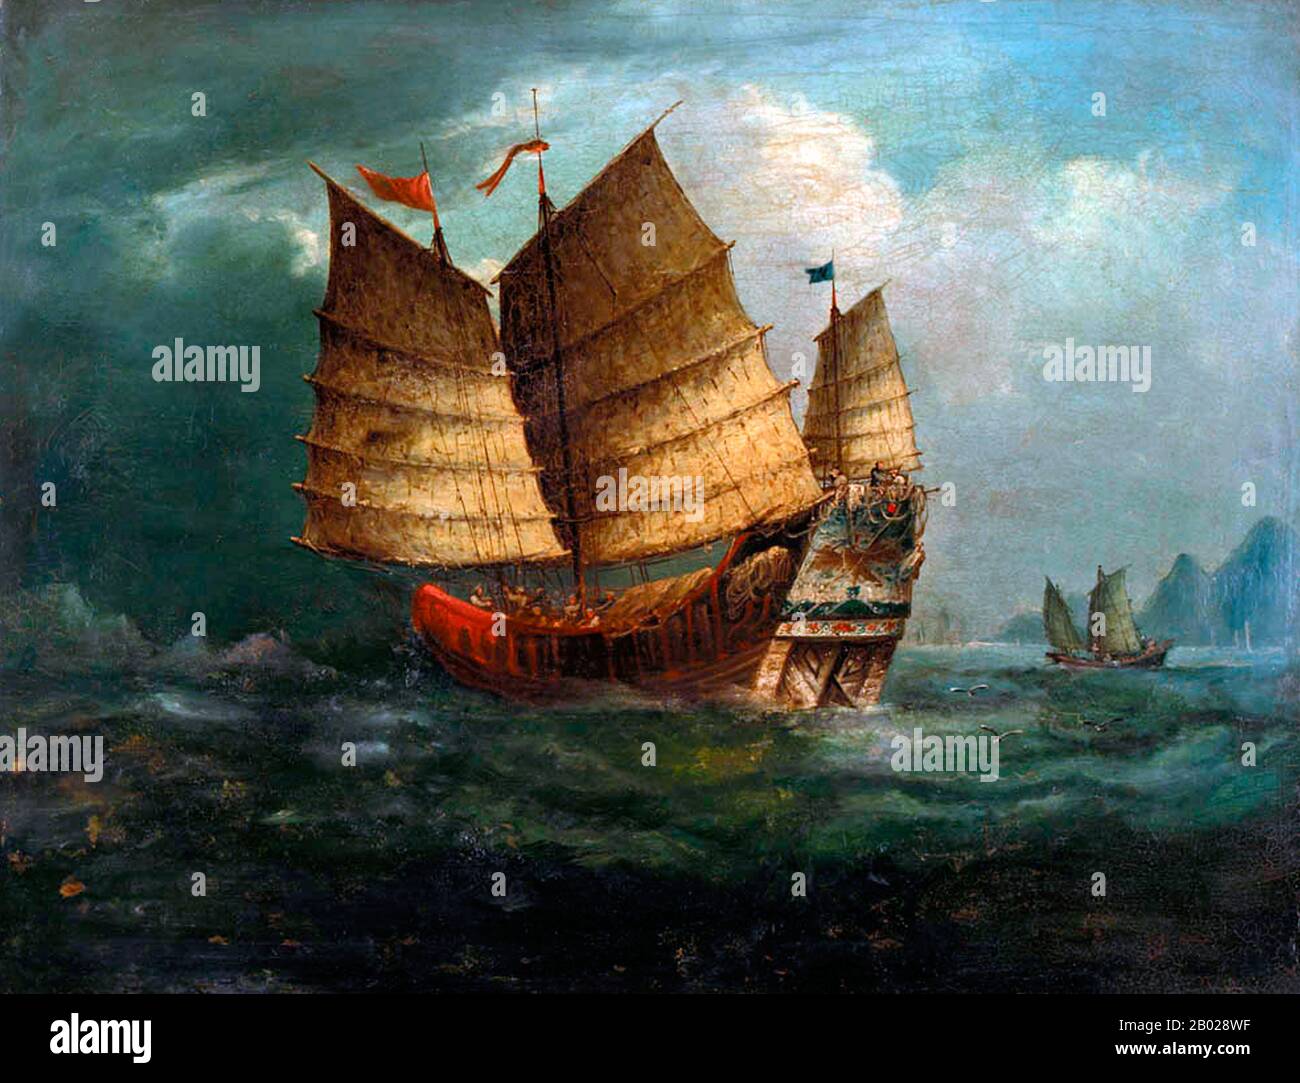 Ein Junk ist ein altes chinesisches Segelschiffdesign, das noch heute verwendet wird. Junks wurden während der Han-Dynastie (206 v. Chr.-220 n. Chr.) entwickelt und wurden bereits im 2. Jahrhundert als Seeschiffe eingesetzt. Sie entwickelten sich in den späteren Dynastien und wurden in ganz Asien für umfangreiche Ozeanfahrten verwendet. Sie wurden in ganz Südostasien und Indien, aber vor allem in China, vielleicht am berühmtesten in Hongkong, gefunden und in geringerer Zahl noch gefunden. Stockfoto